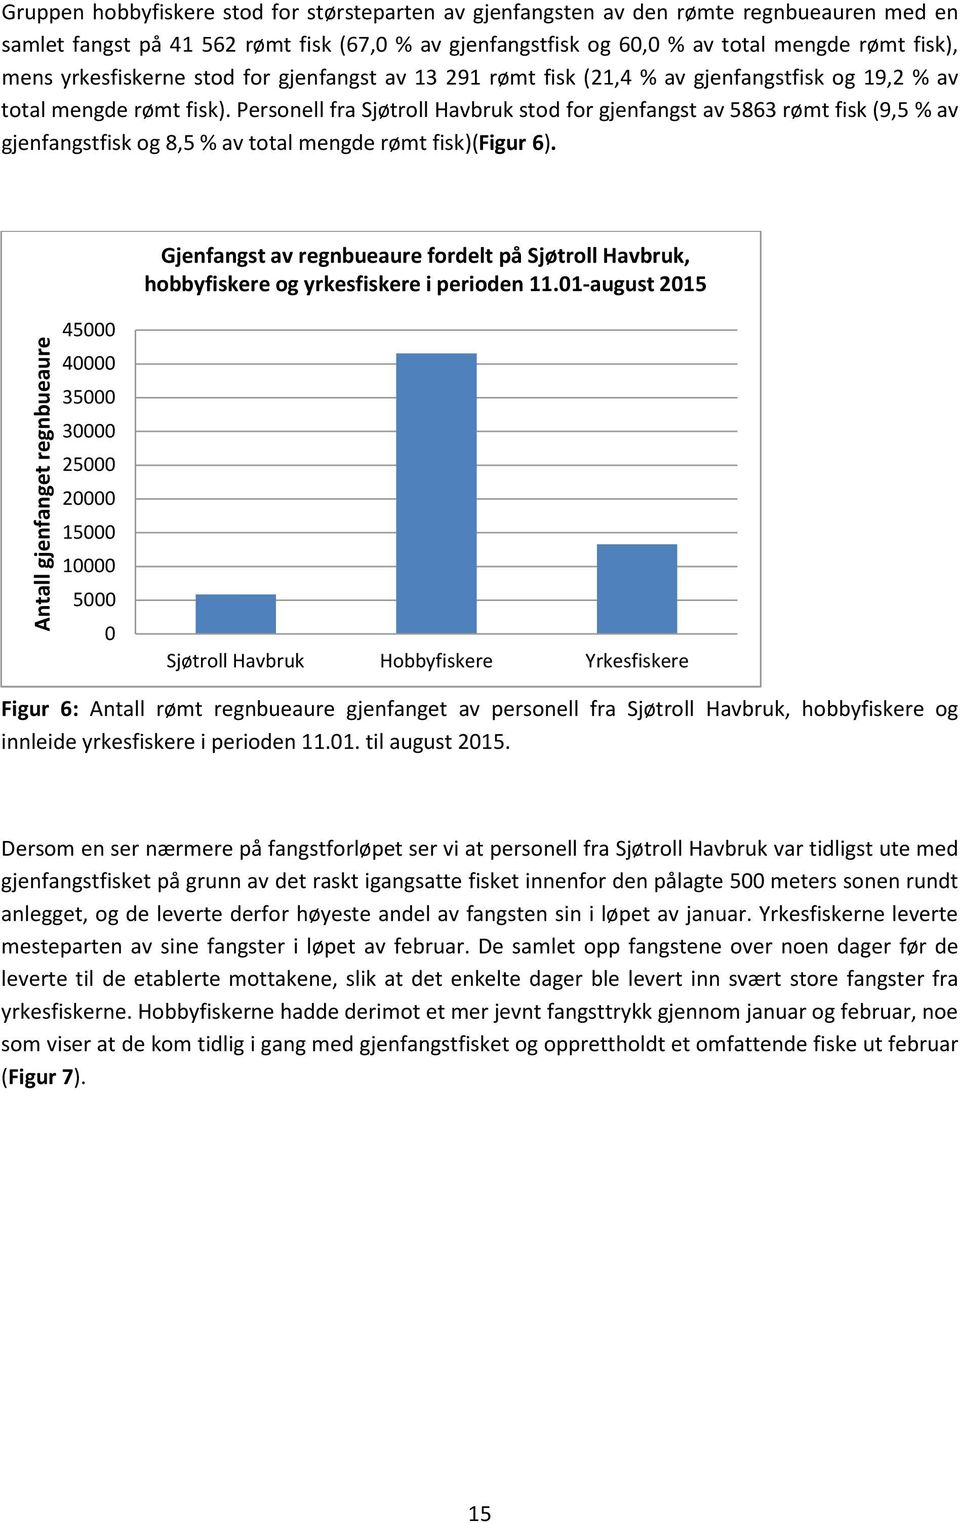 Personell fra Sjøtroll Havbruk stod for gjenfangst av 5863 rømt fisk (9,5 % av gjenfangstfisk og 8,5 % av total mengde rømt fisk)(figur 6).